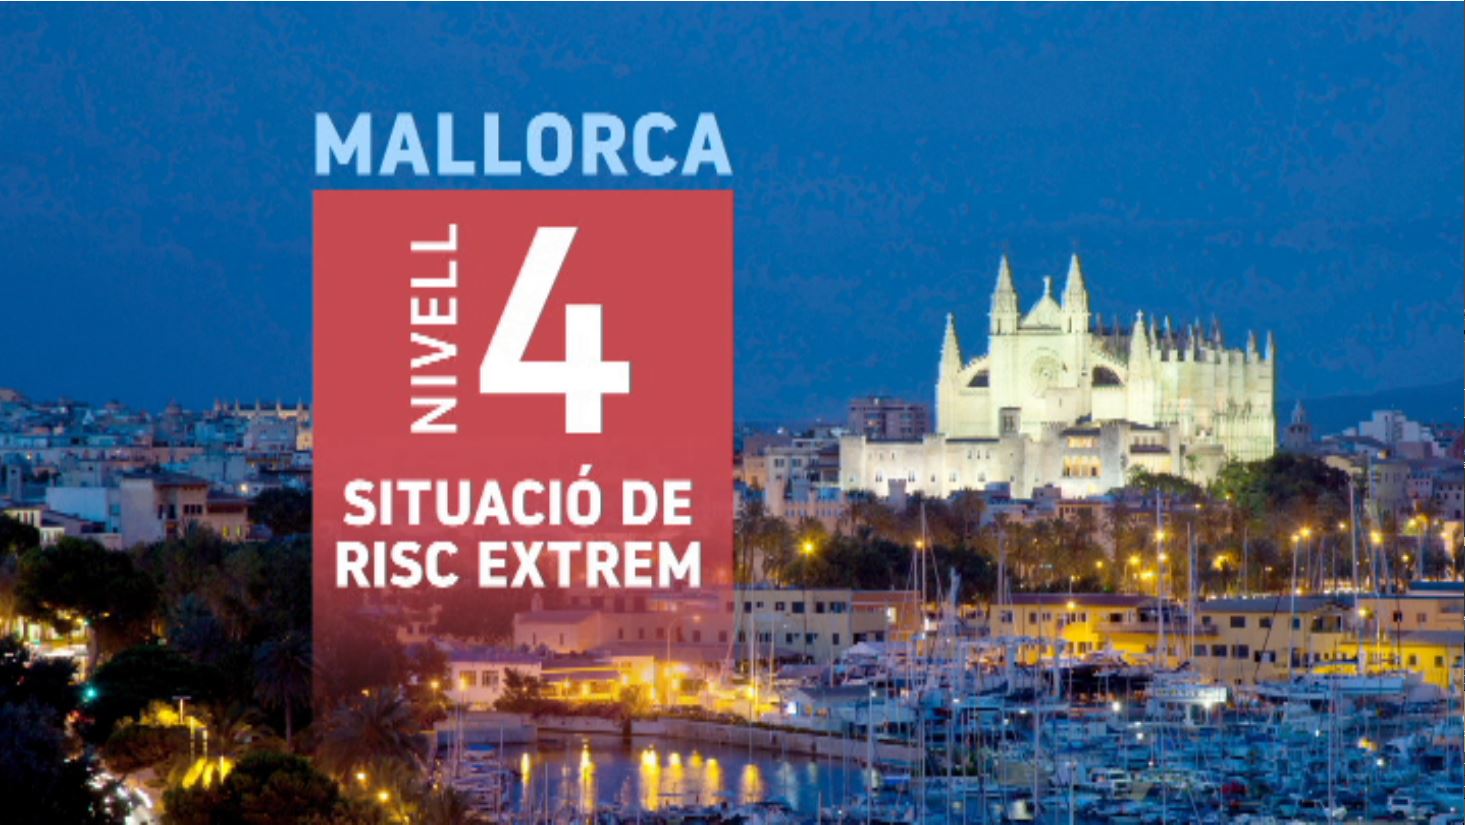 S’endureixen les restriccions a Mallorca, també per Nadal